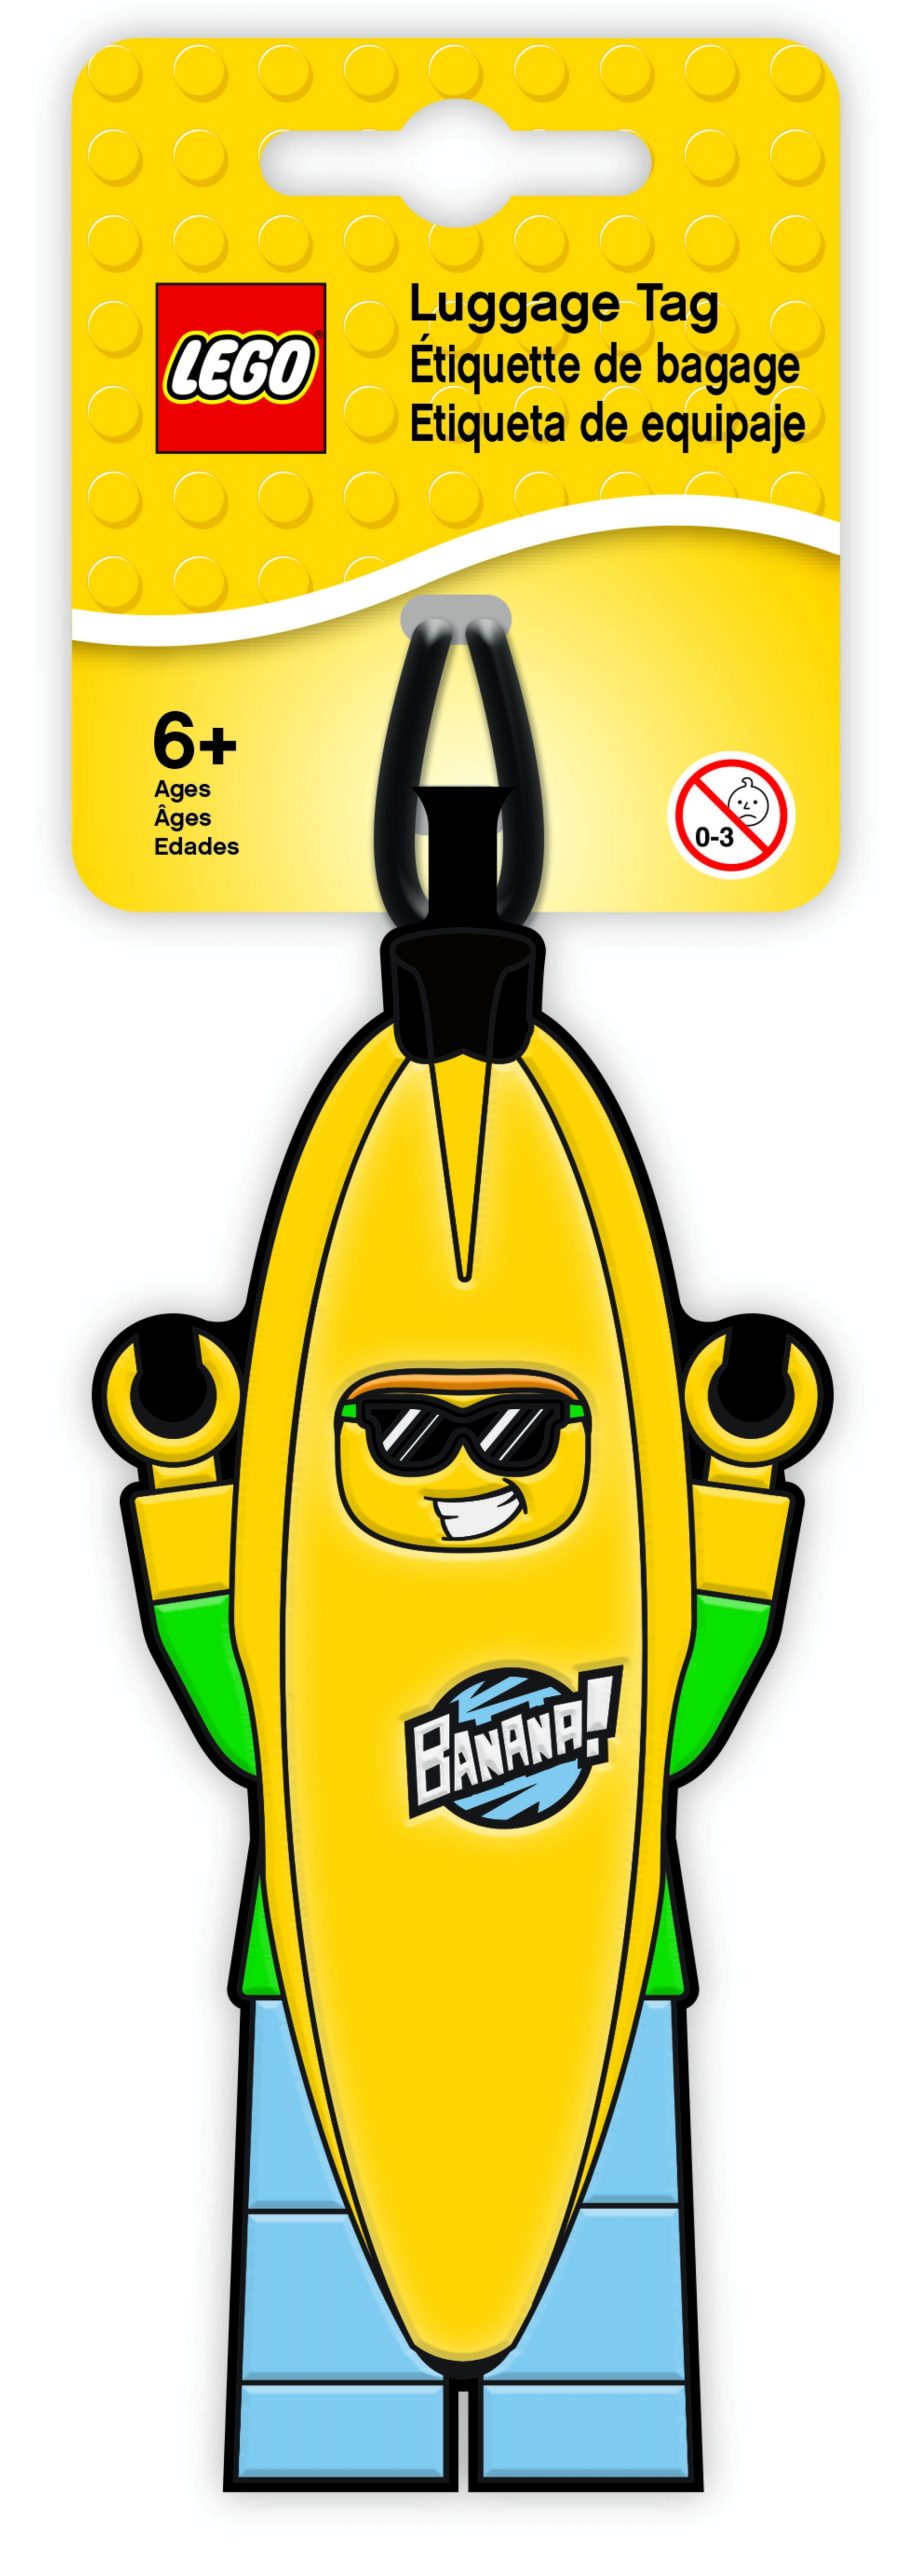 lego 5005580 banana guy luggage tag scaled